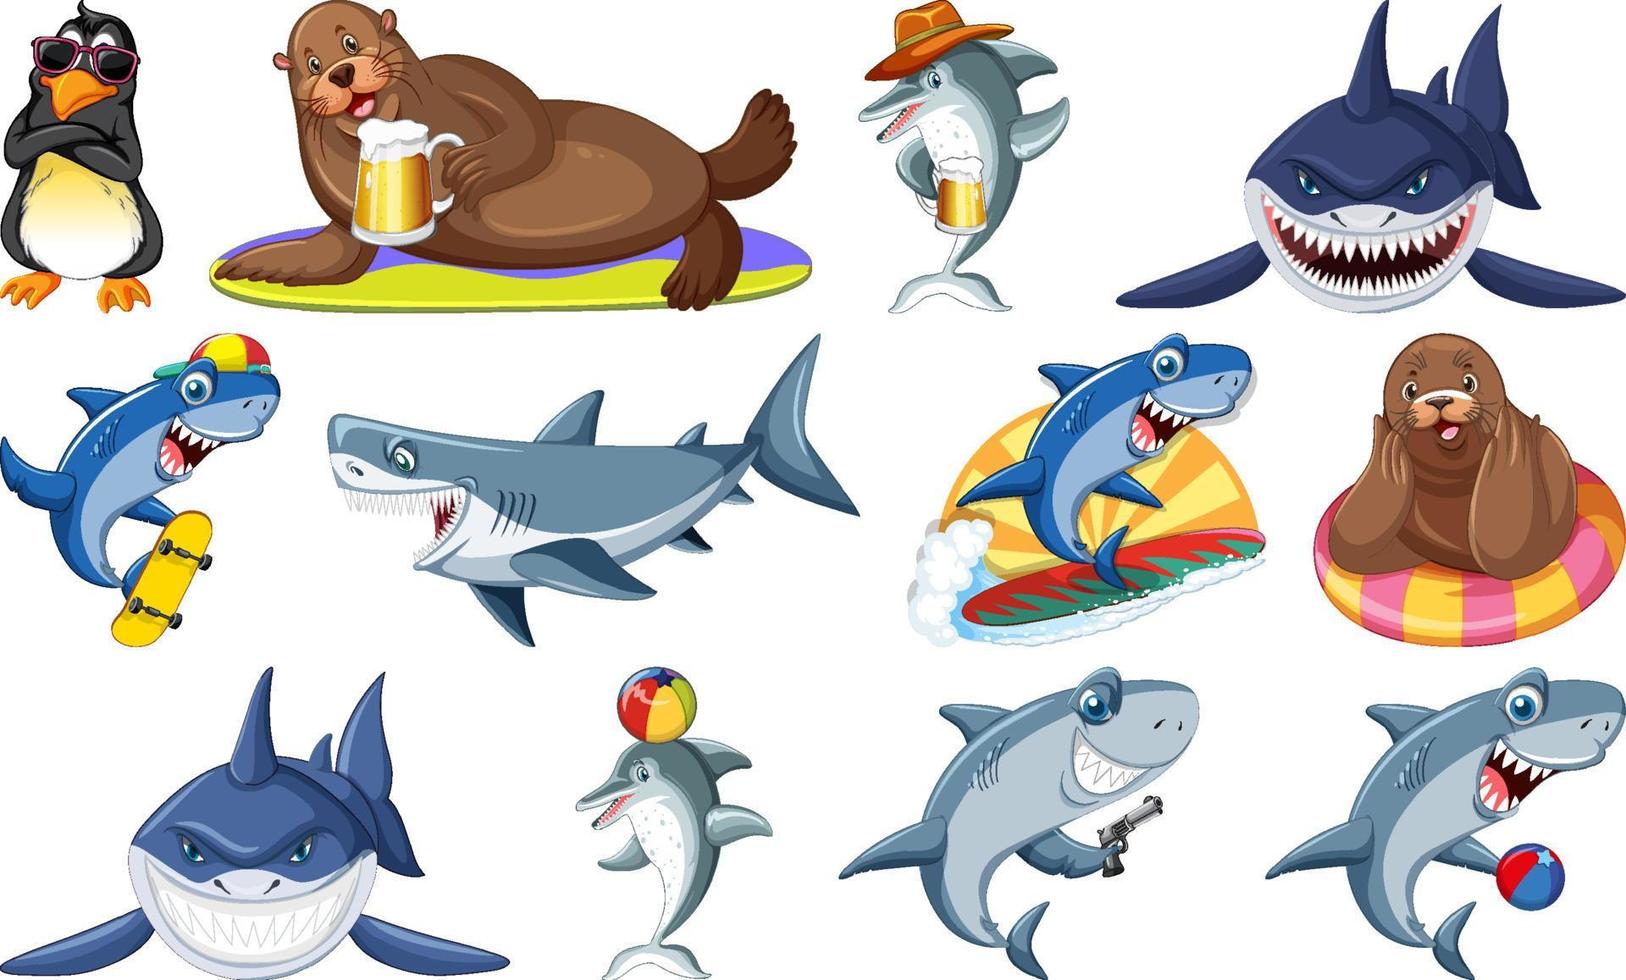 conjunto de vários personagens de desenhos animados de animais marinhos vetor